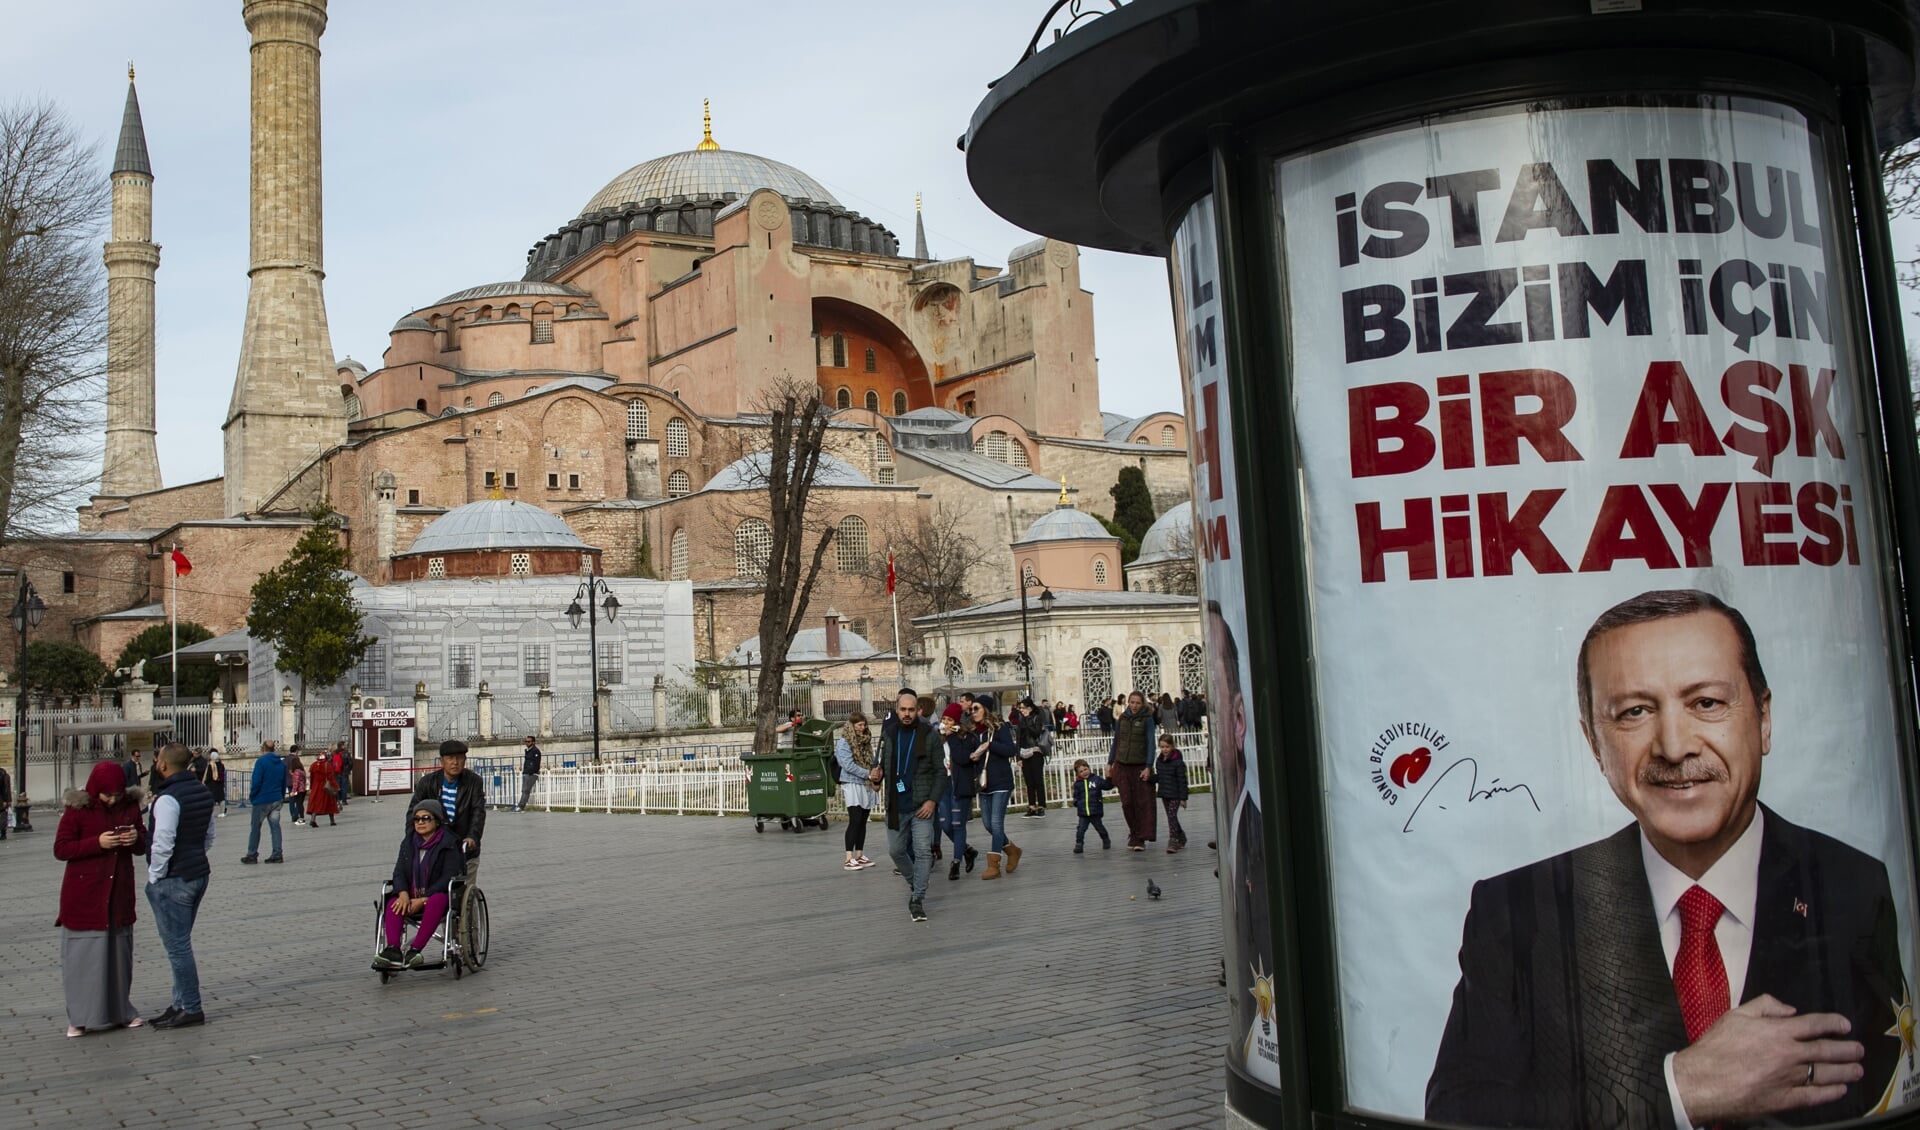 De Hagia Sophia in Istanbul met een verkiezingsposter van president Recep Tayyip Erdogan in maart 2019. 'Istanboel is een liefdesverhaal voor ons', zegt de slogan.